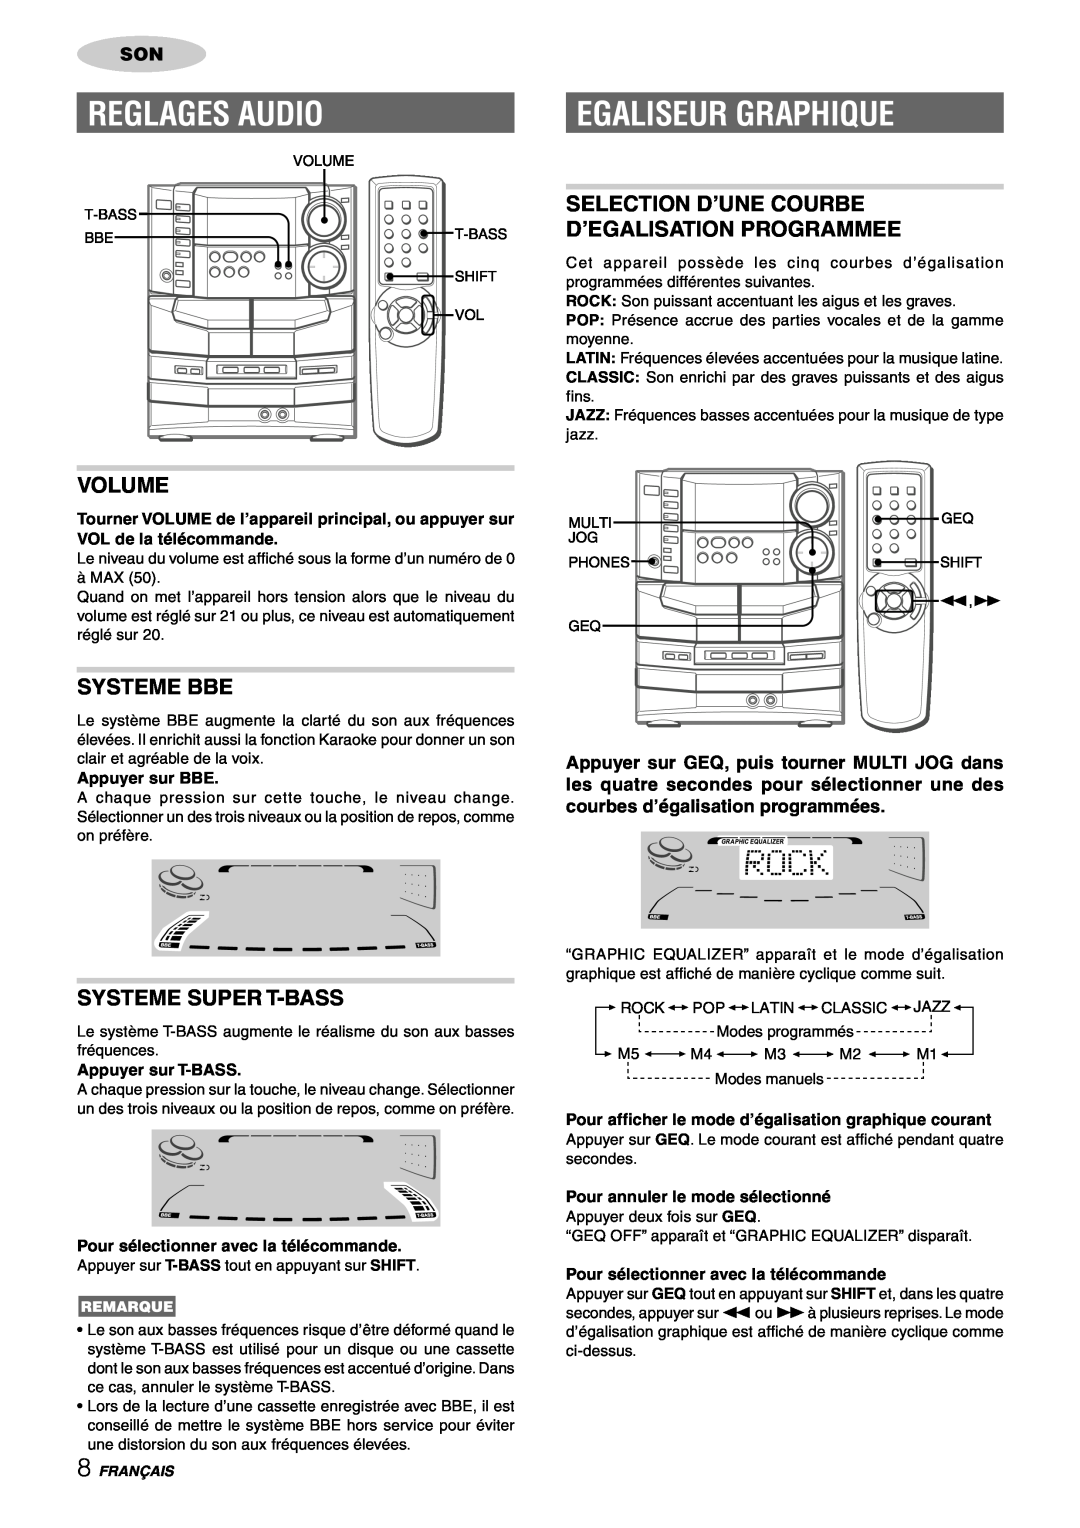 Sony NSX-AJ80 Reglages Audio, Egaliseur Graphique, Systeme Bbe, Systeme Super T-Bass, Volume, Appuyer sur BBE, Français 